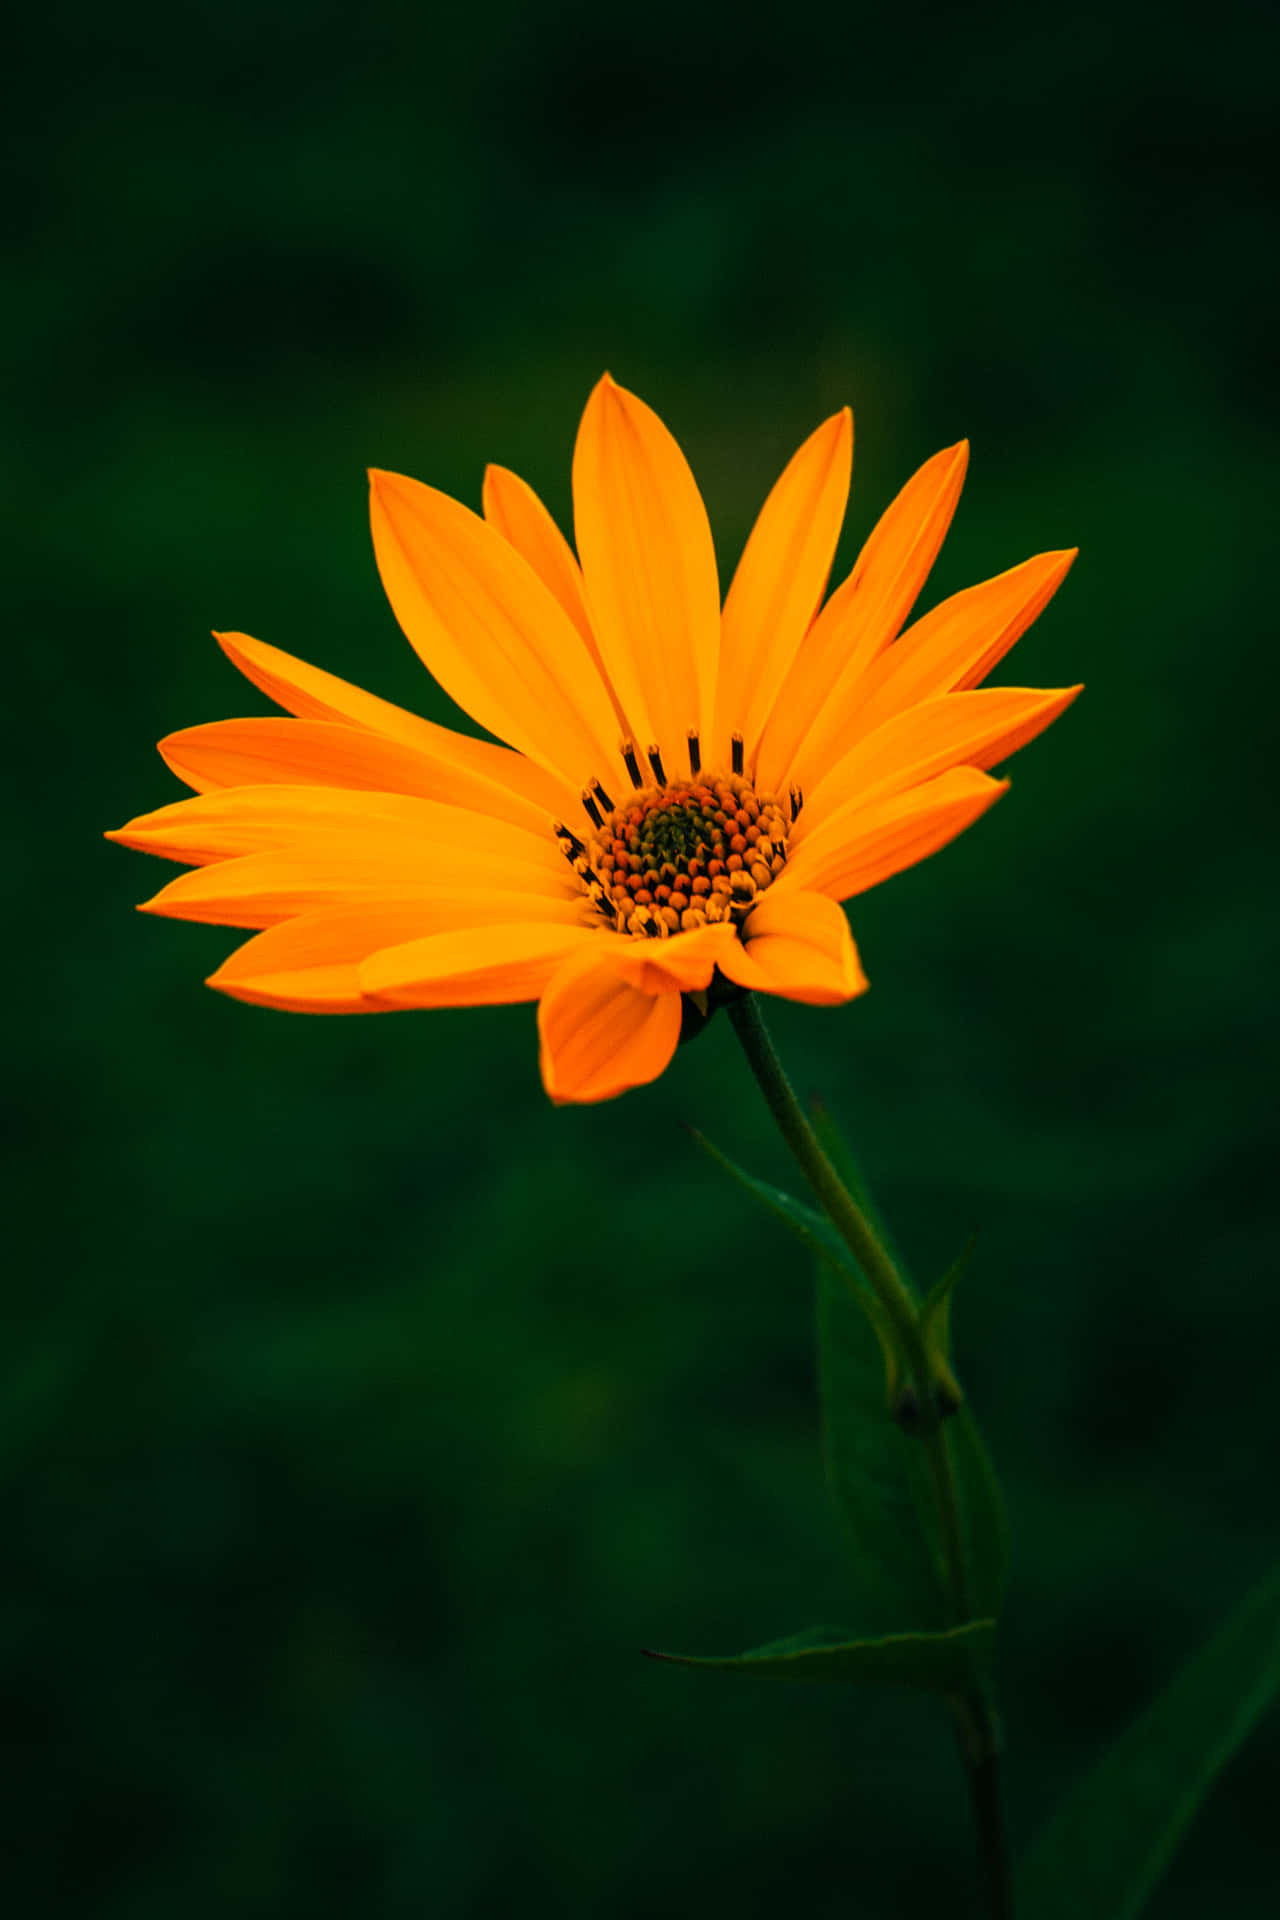 Tải hình nền hoa cam miễn phí ngay hôm nay để trang trí màn hình của bạn. Với những bức ảnh hoa cam vô cùng đẹp mắt, bạn sẽ không phải tốn một xu để sở hữu một bức hình nền tuyệt đẹp trên thiết bị của mình.